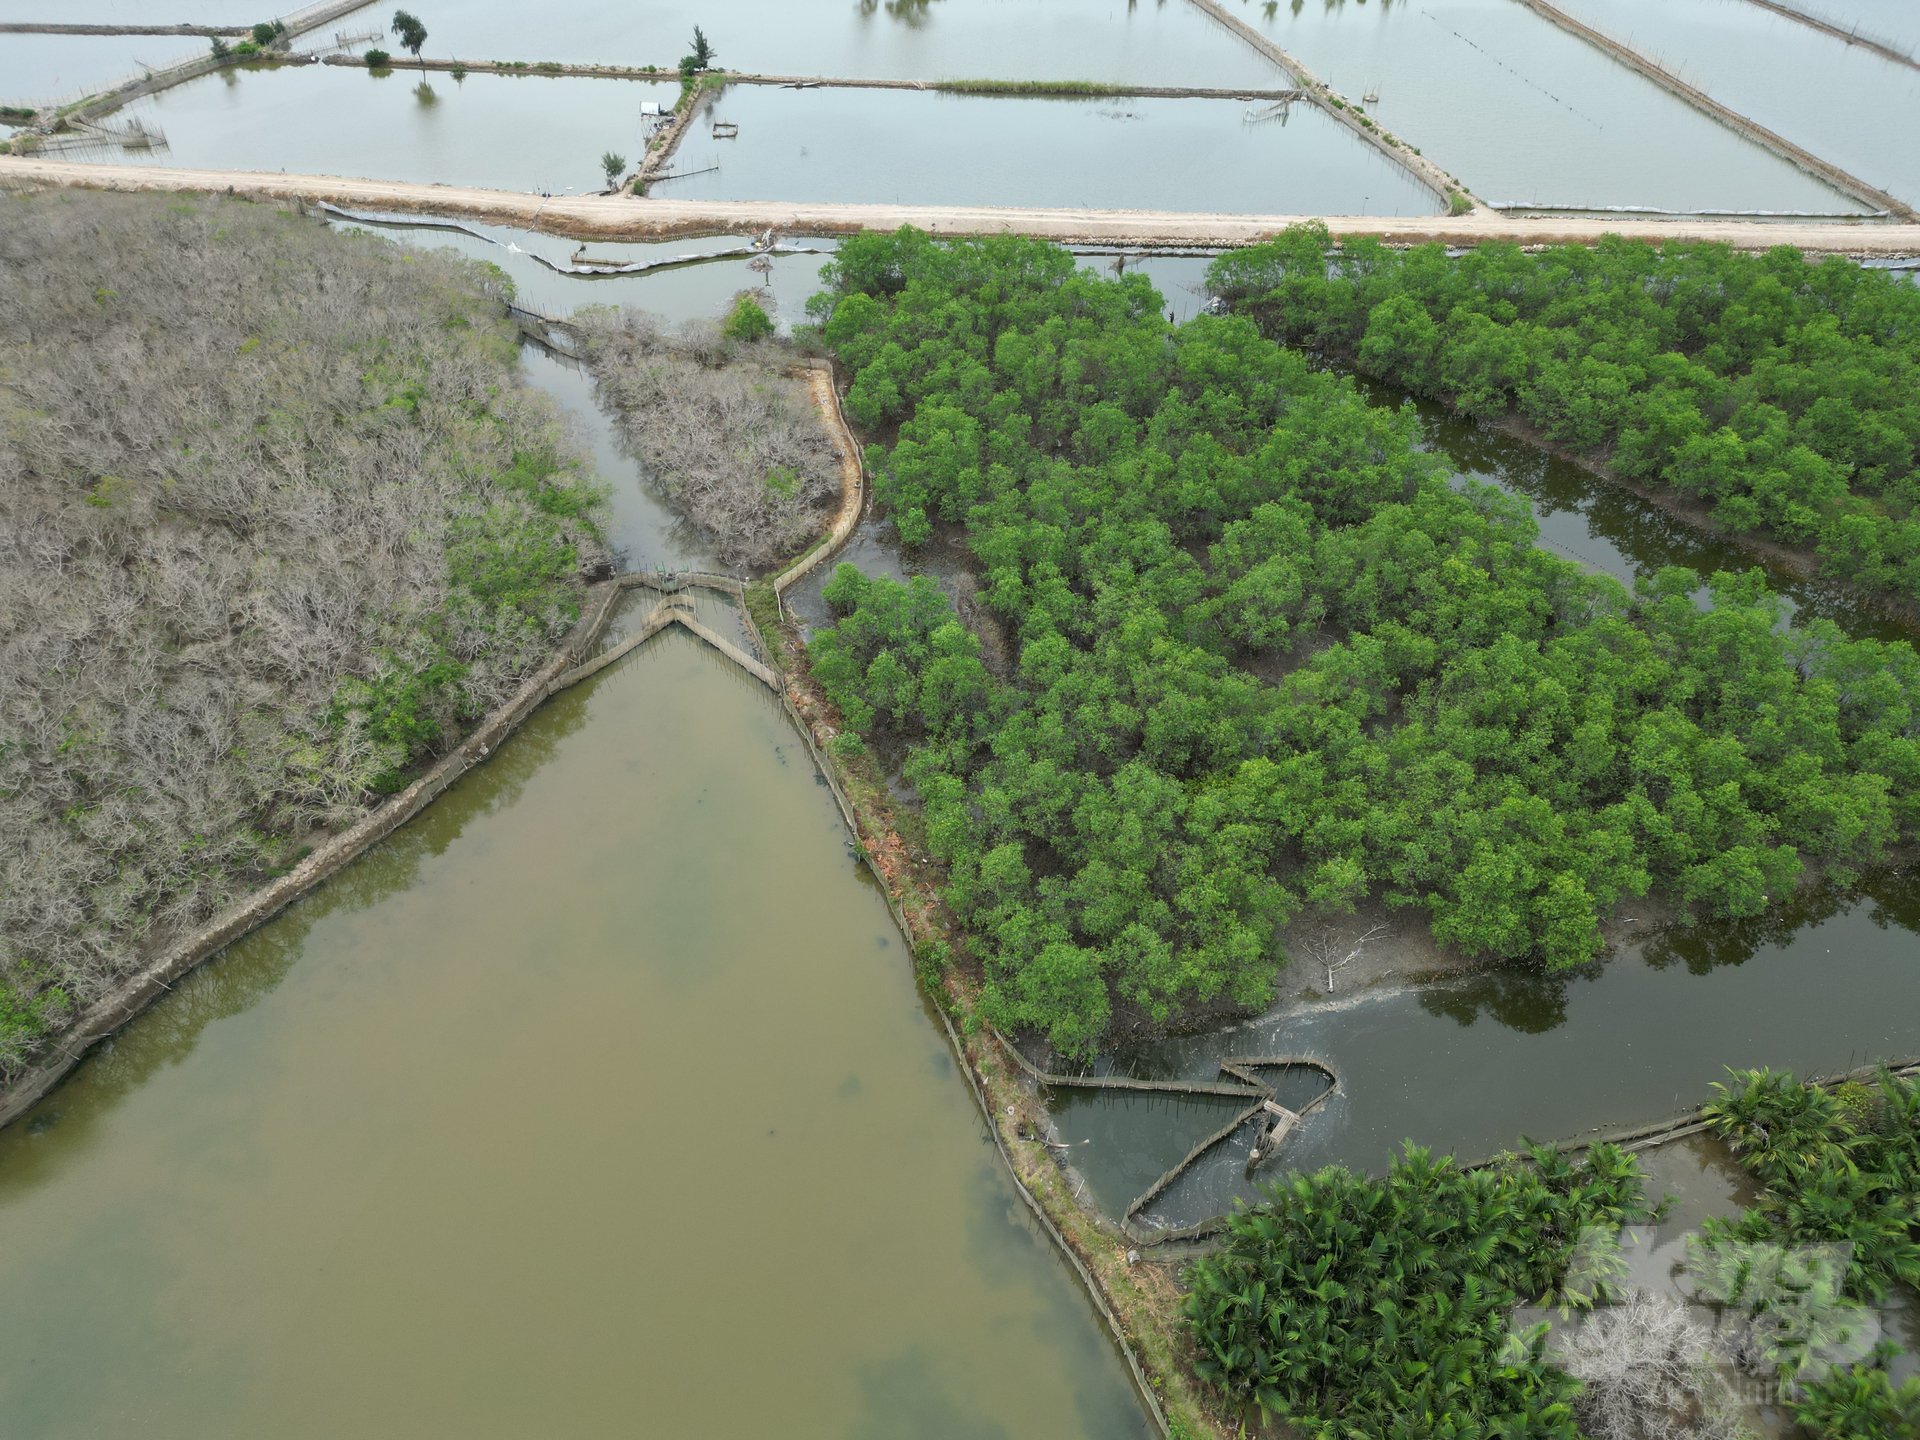 Rú Chá là tên của một khu rừng ngập mặn nguyên sinh nằm tại làng Thuận Hòa, xã Hương Phong, thành phố Huế, tỉnh Thừa Thiên Huế. Nơi đây được biết đến là khu rừng ngập mặn duy nhất còn tồn tại trên hệ đầm phá Tam Giang, cũng là hệ đầm phá nước lợ lớn nhất tại khu vực Đông Nam Á.